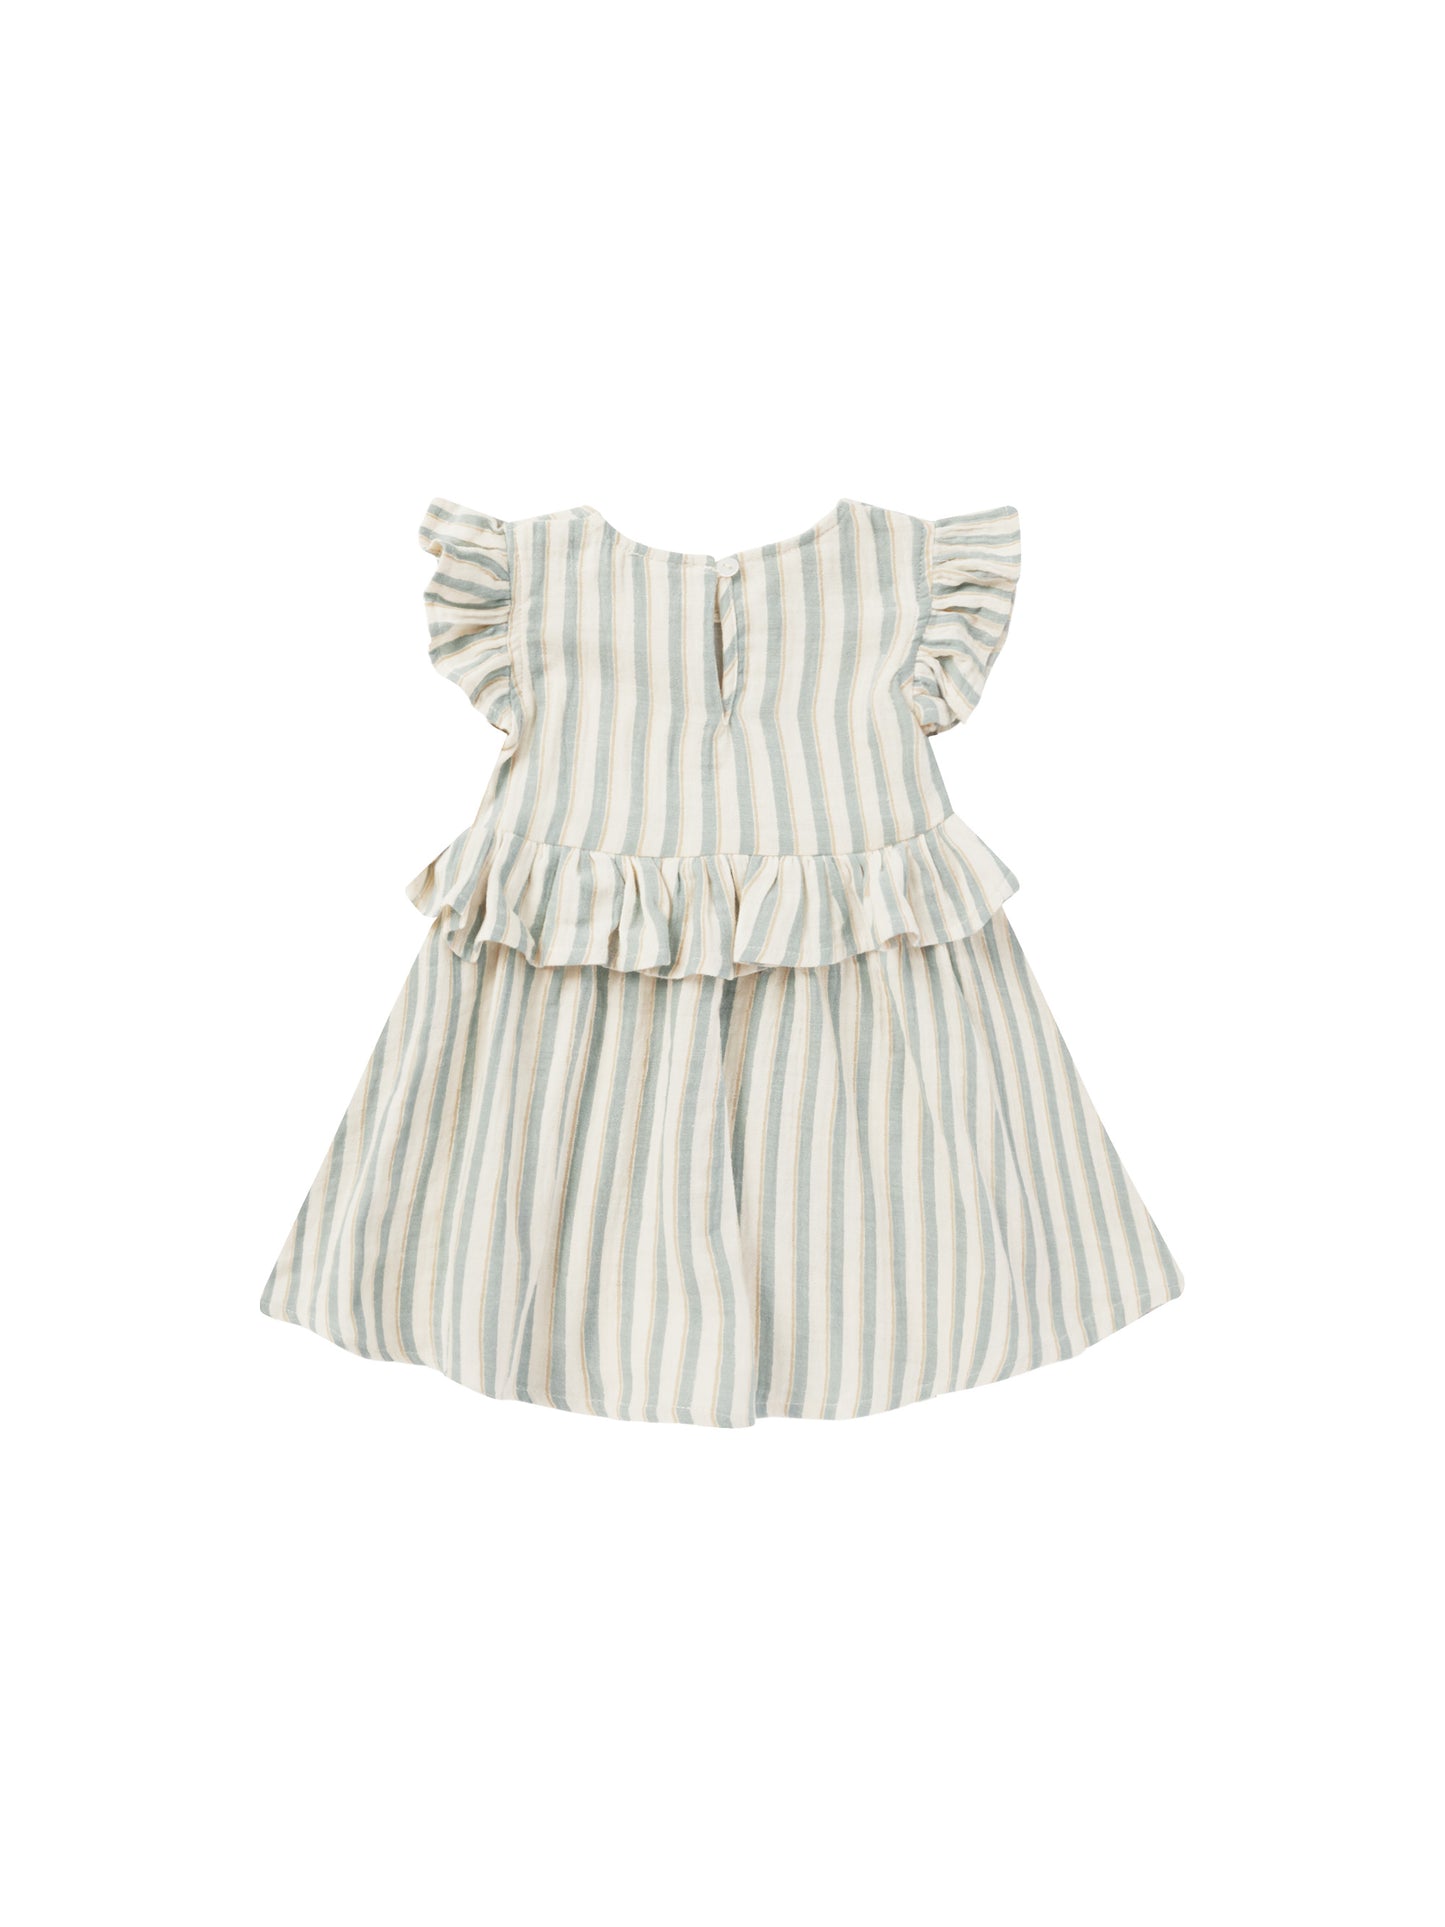 Rylee + Cru - Brielle Dress - Ocean Stripe